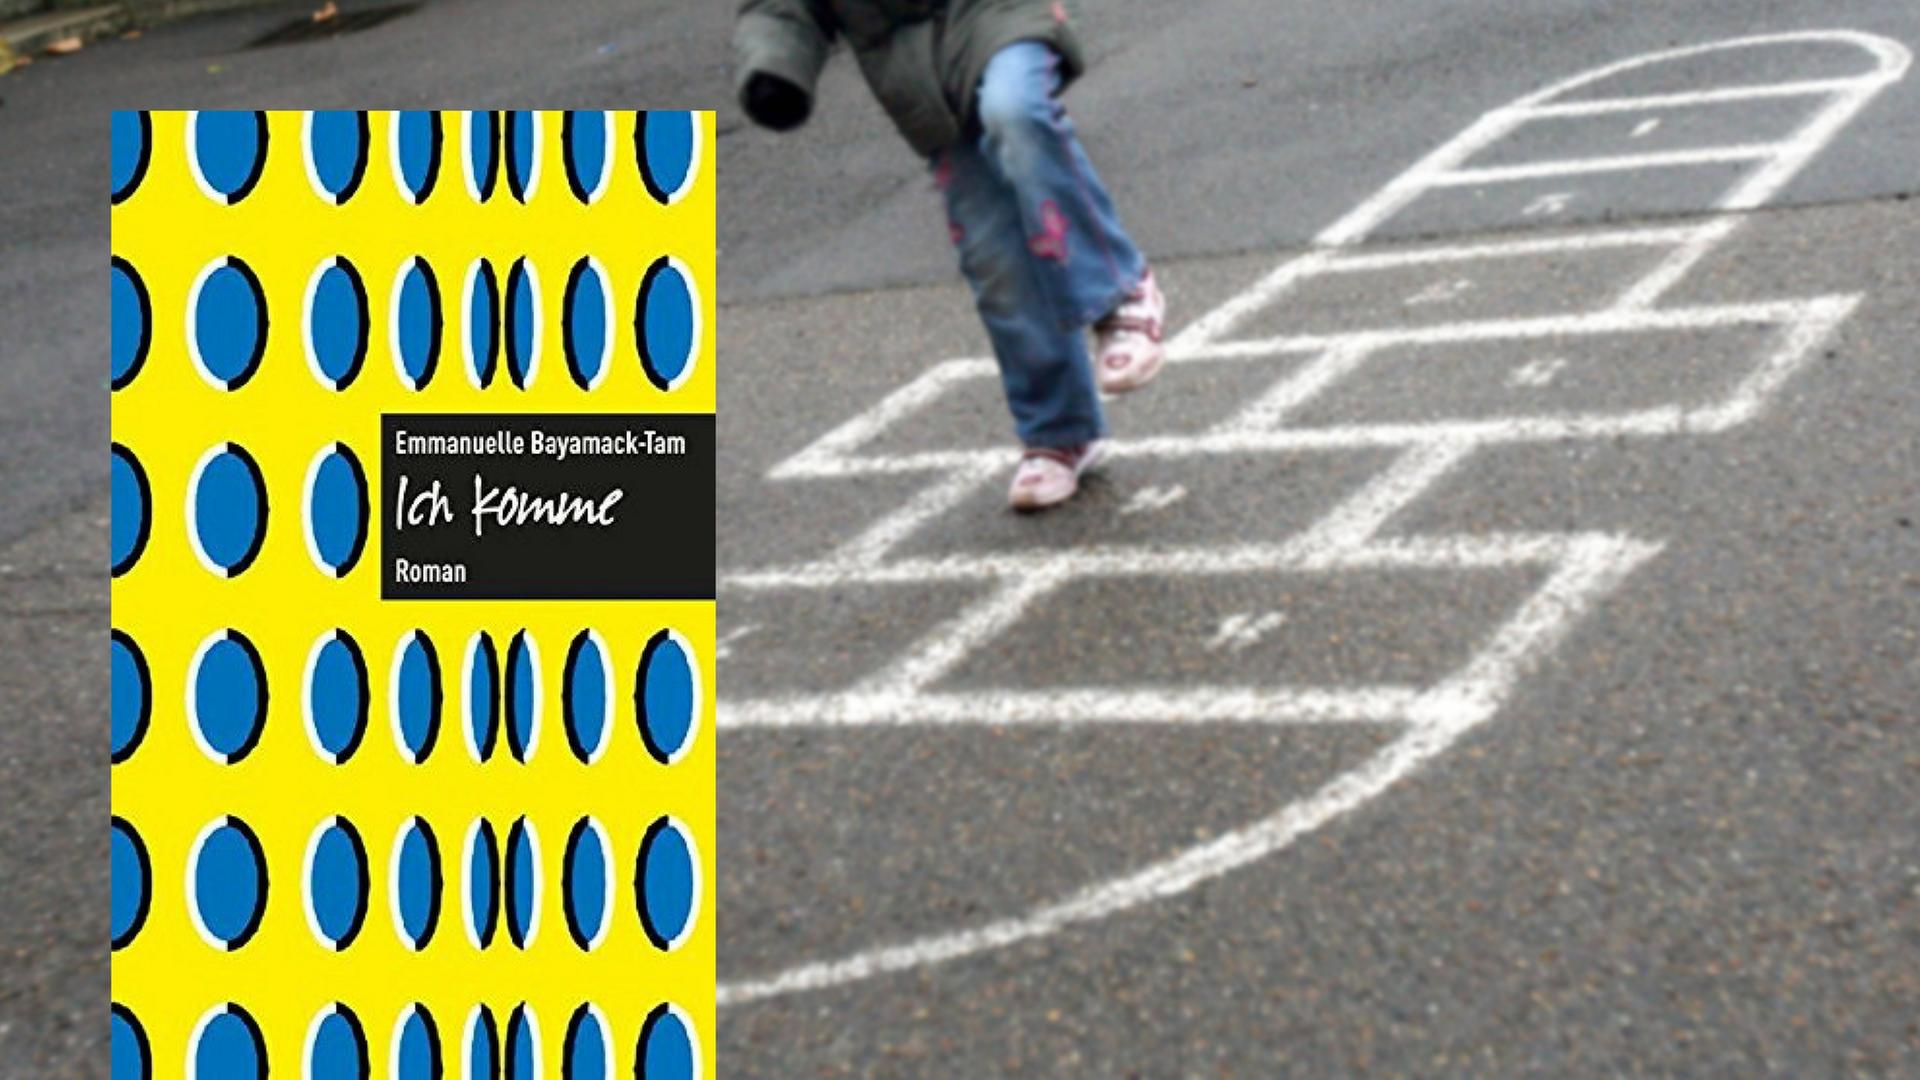 Buchcover von Emmanuelle Bayamack-Tams "Ich komme". Im Hintergrund: Ein Kind spielt auf einem Schulhof.